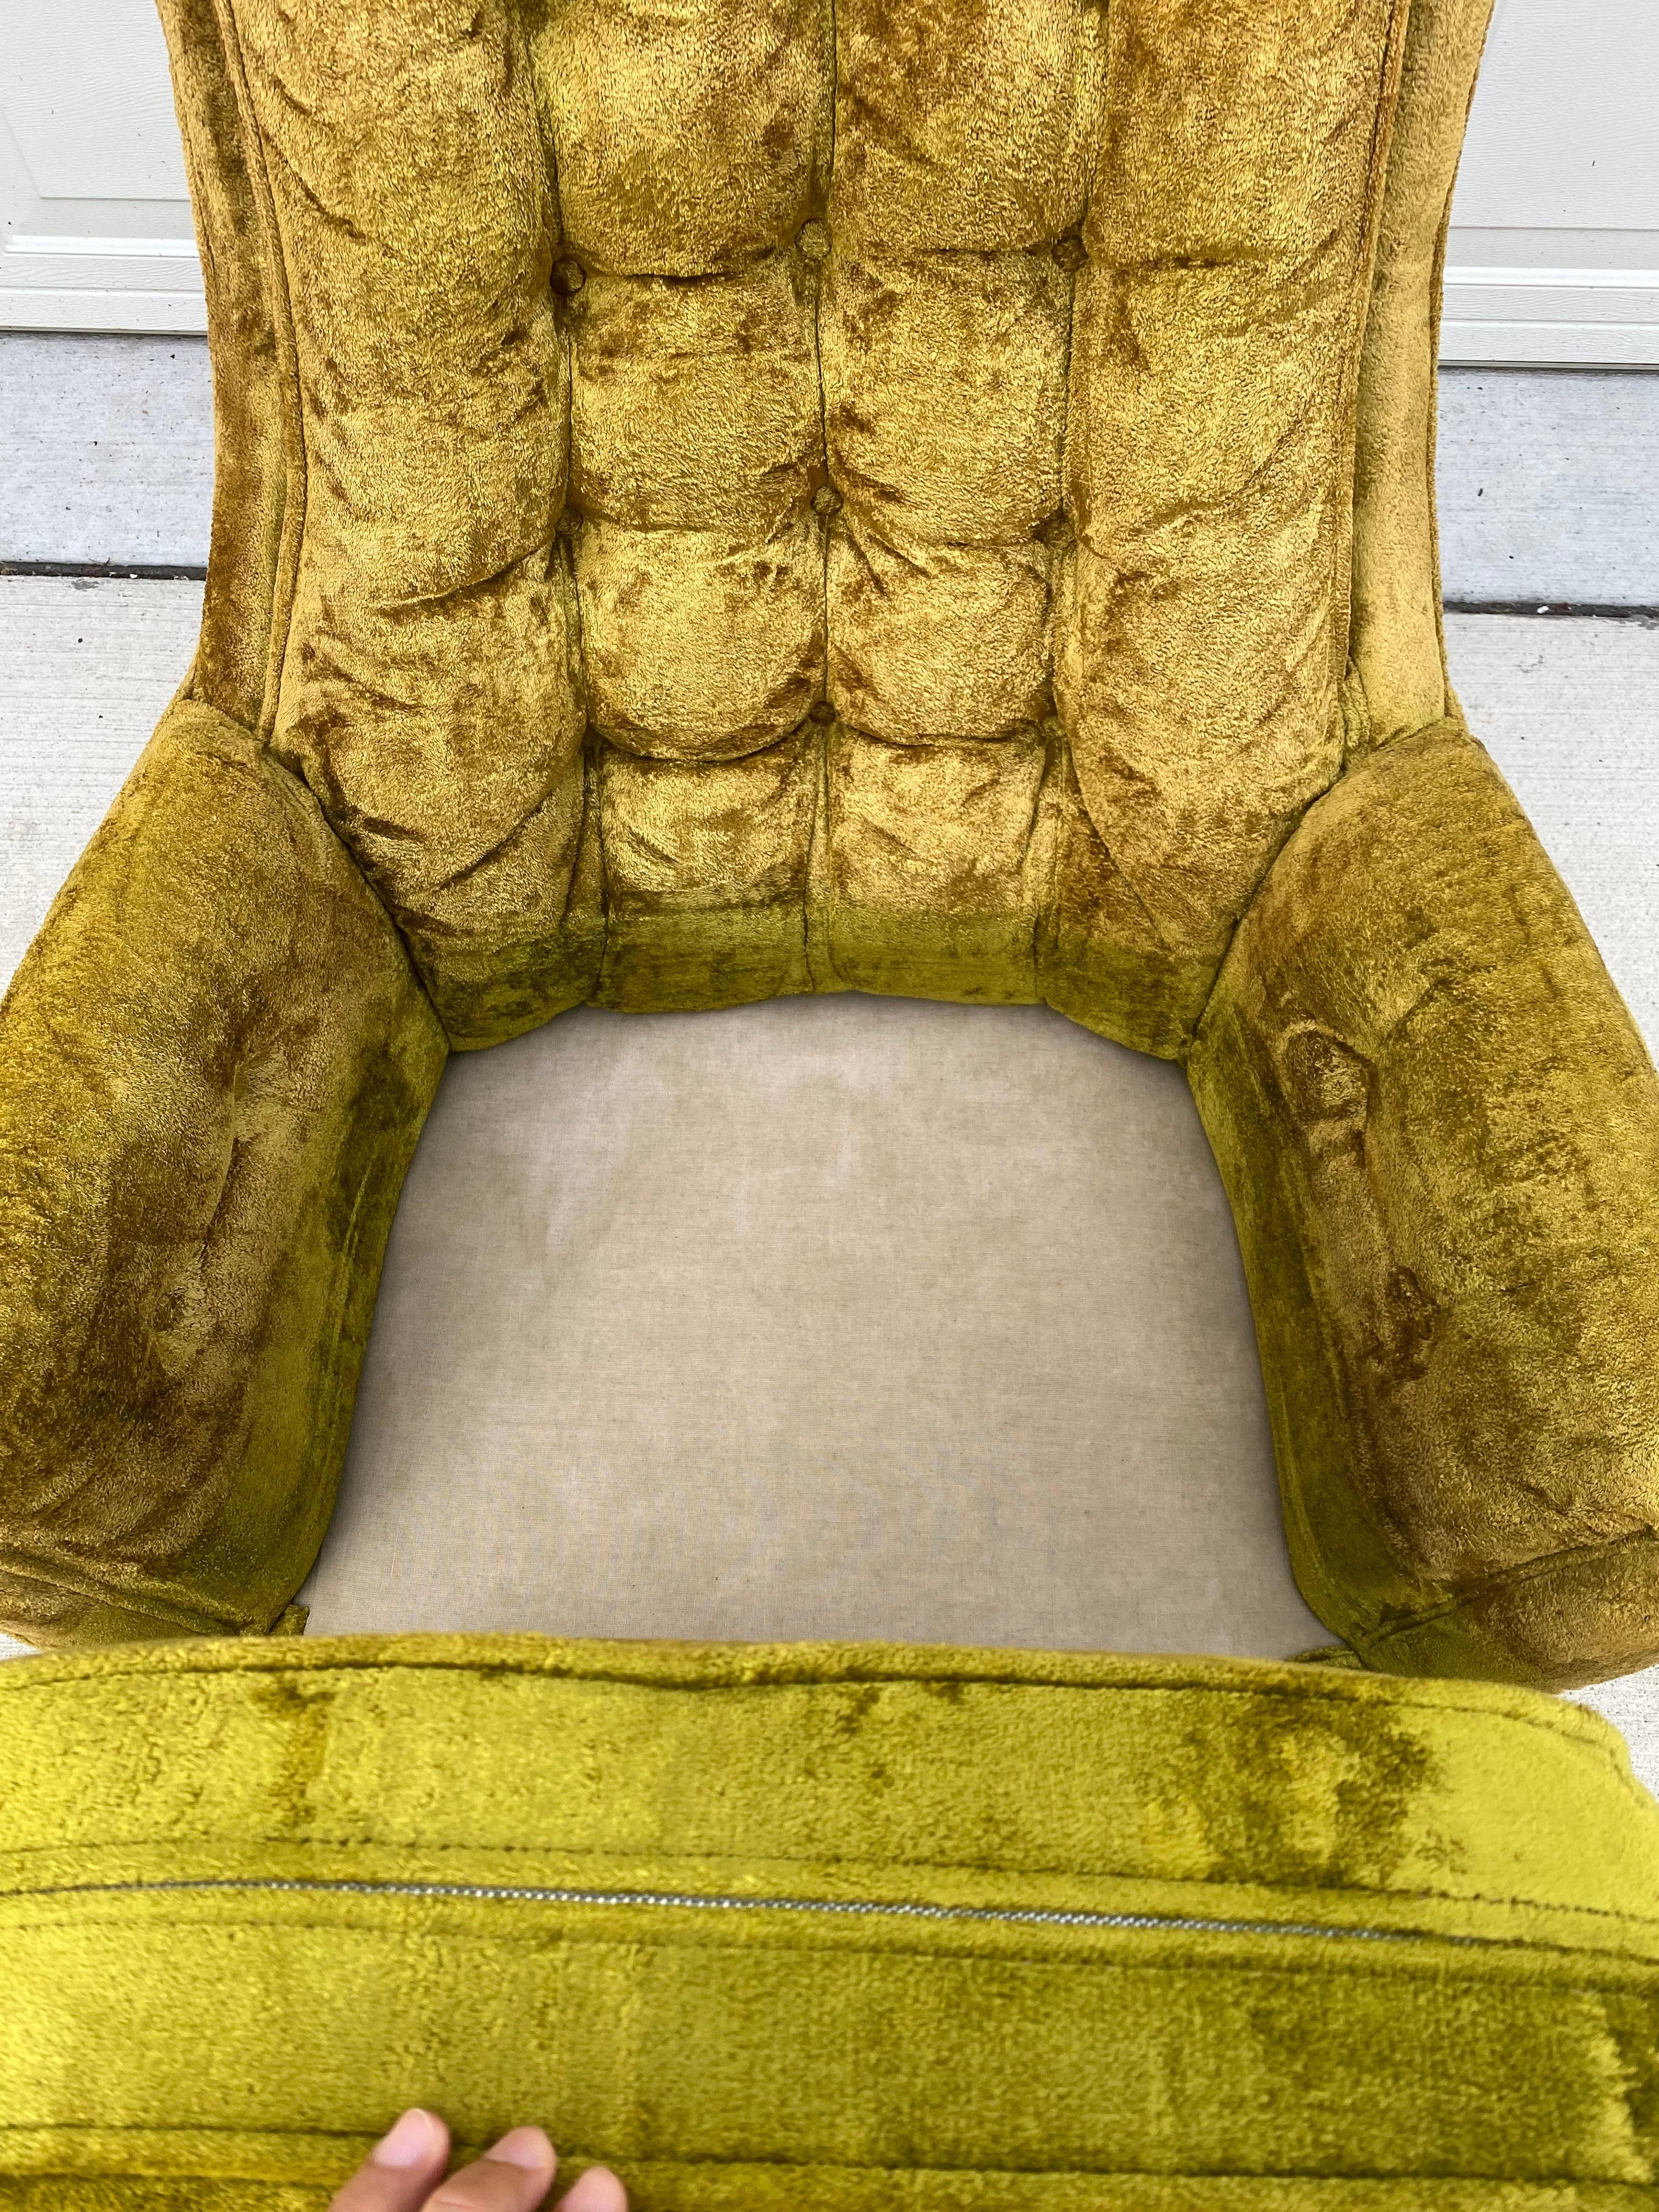 Kroehler Style High Back Tufted Velvet Lounge Chair 1